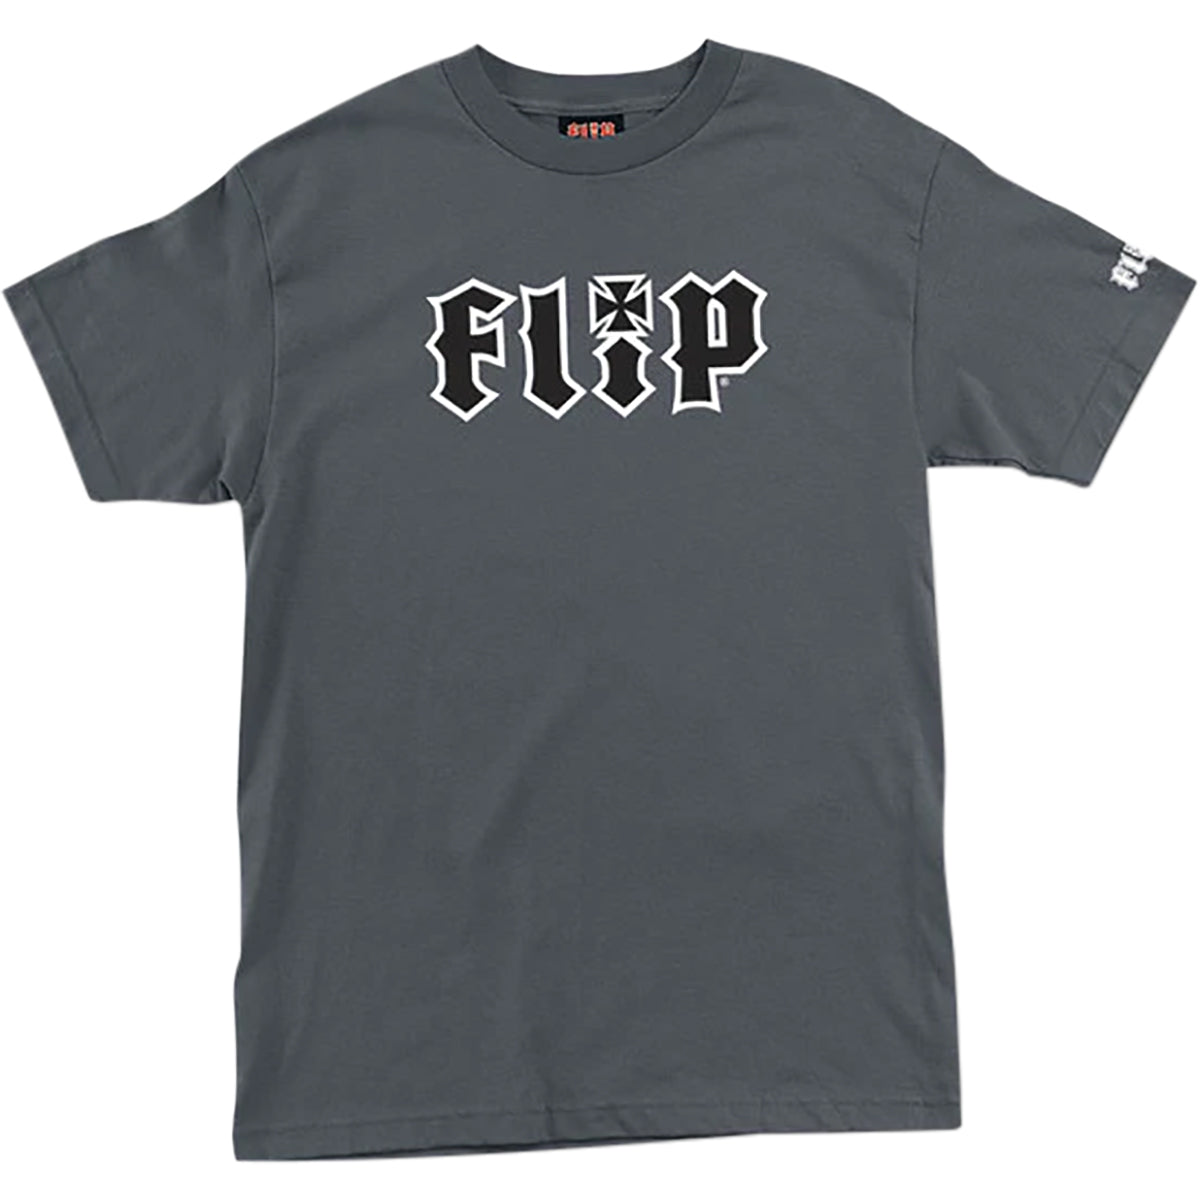 Flip HKD Regular Men's Short-Sleeve Shirts-44152297-53860